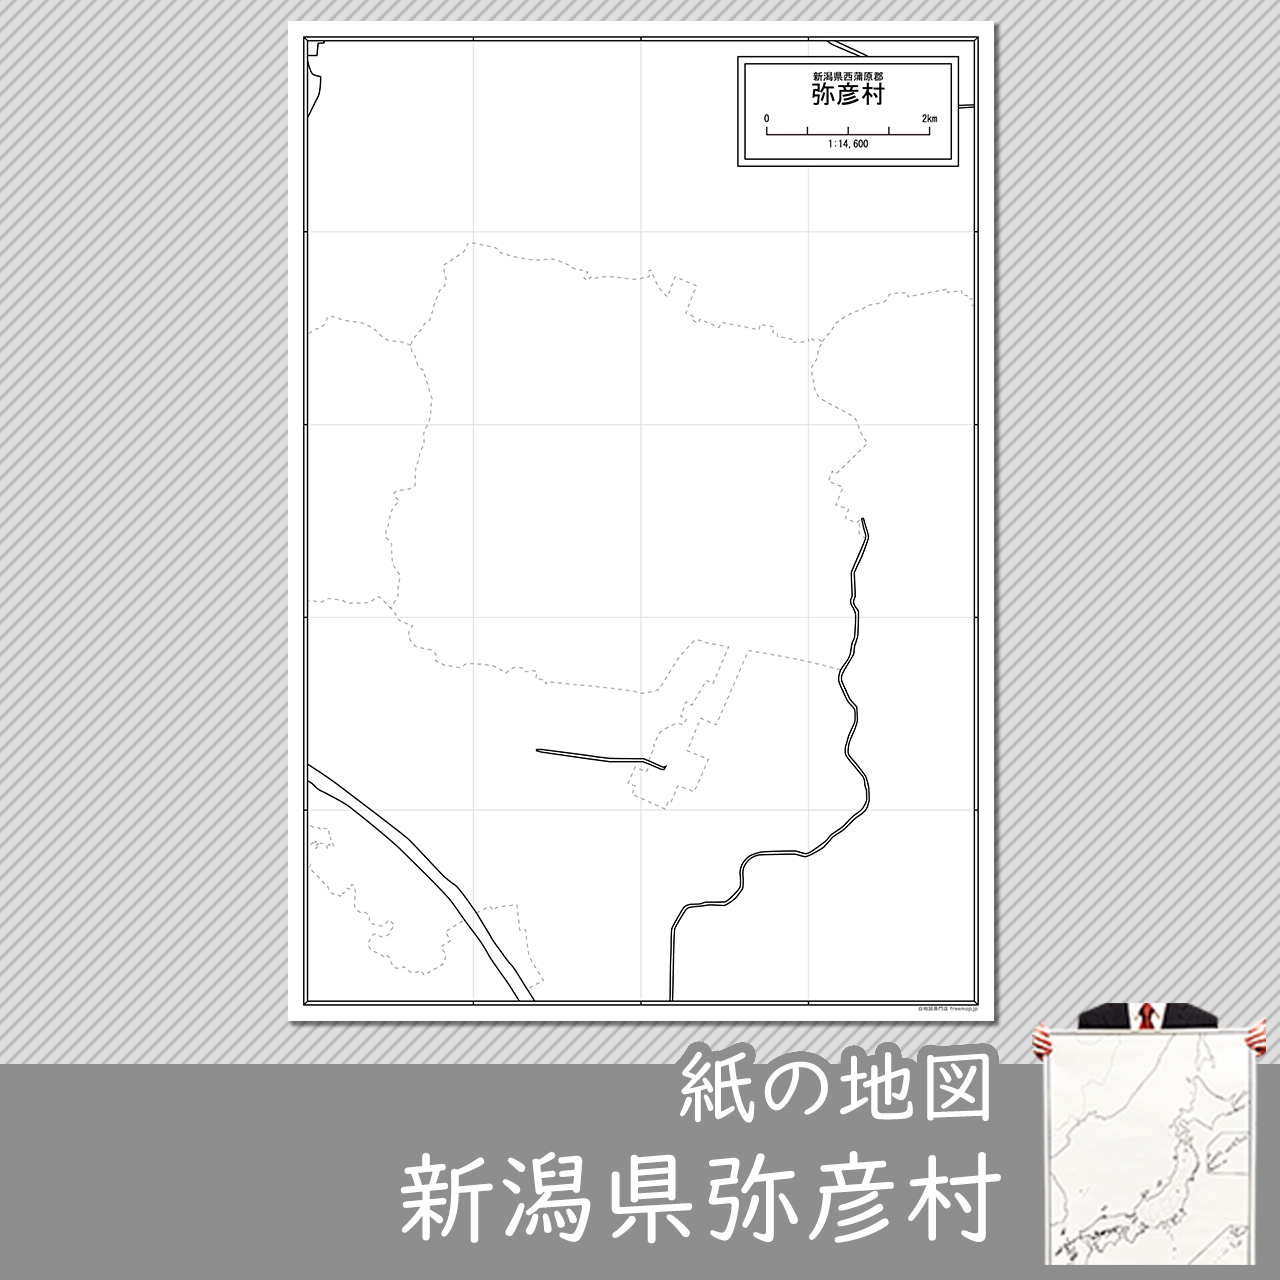 弥彦村の紙の白地図のサムネイル